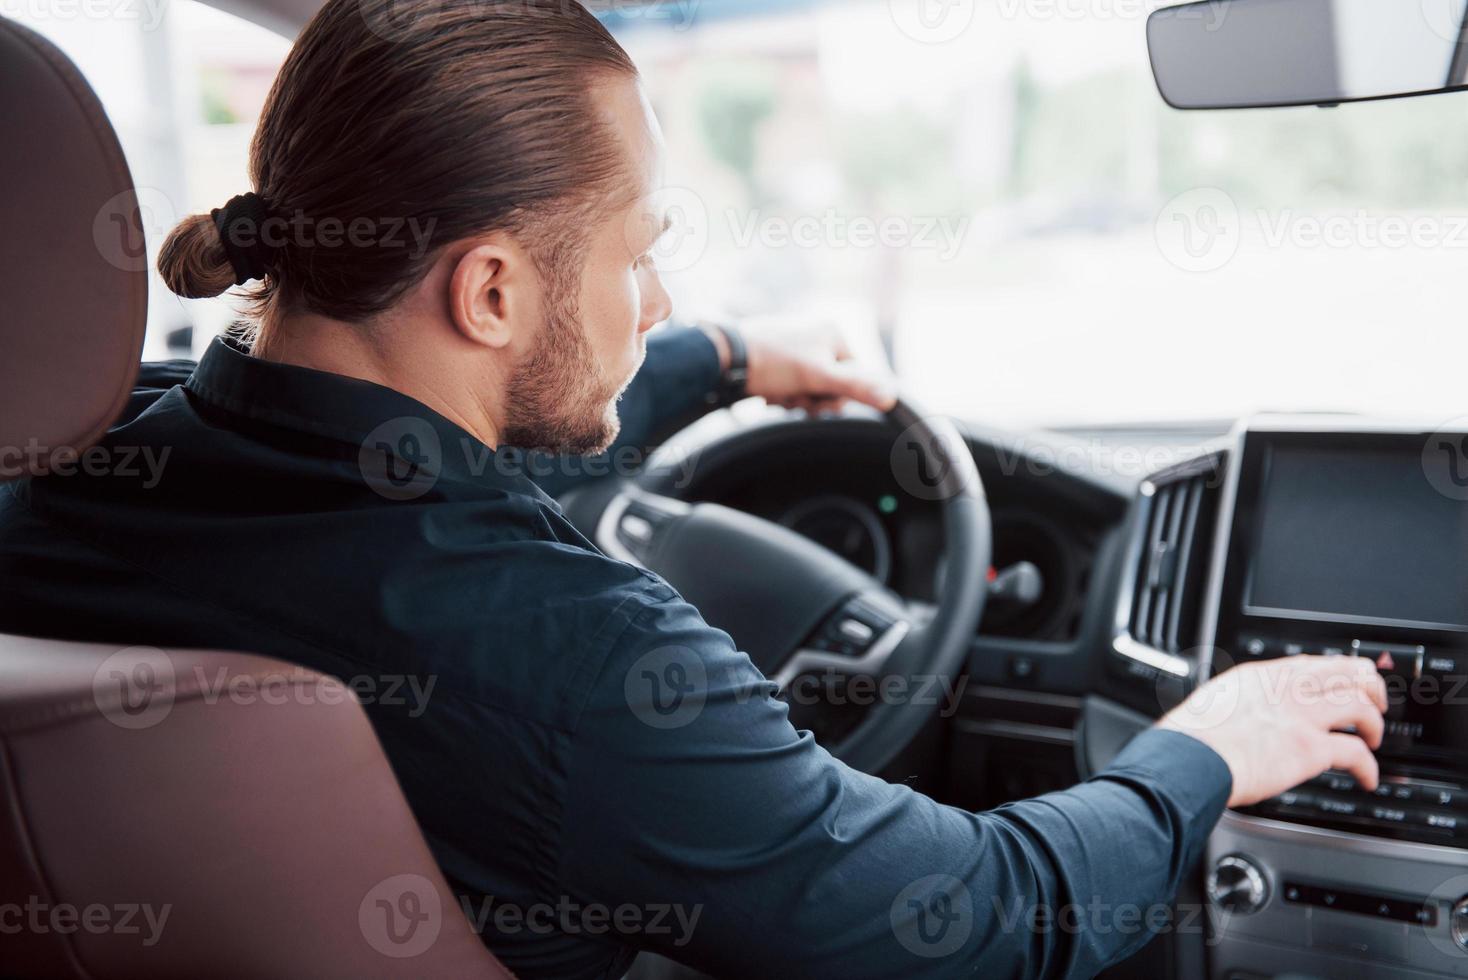 självsäker ung affärsman sitter vid ratten i sin nya bil foto